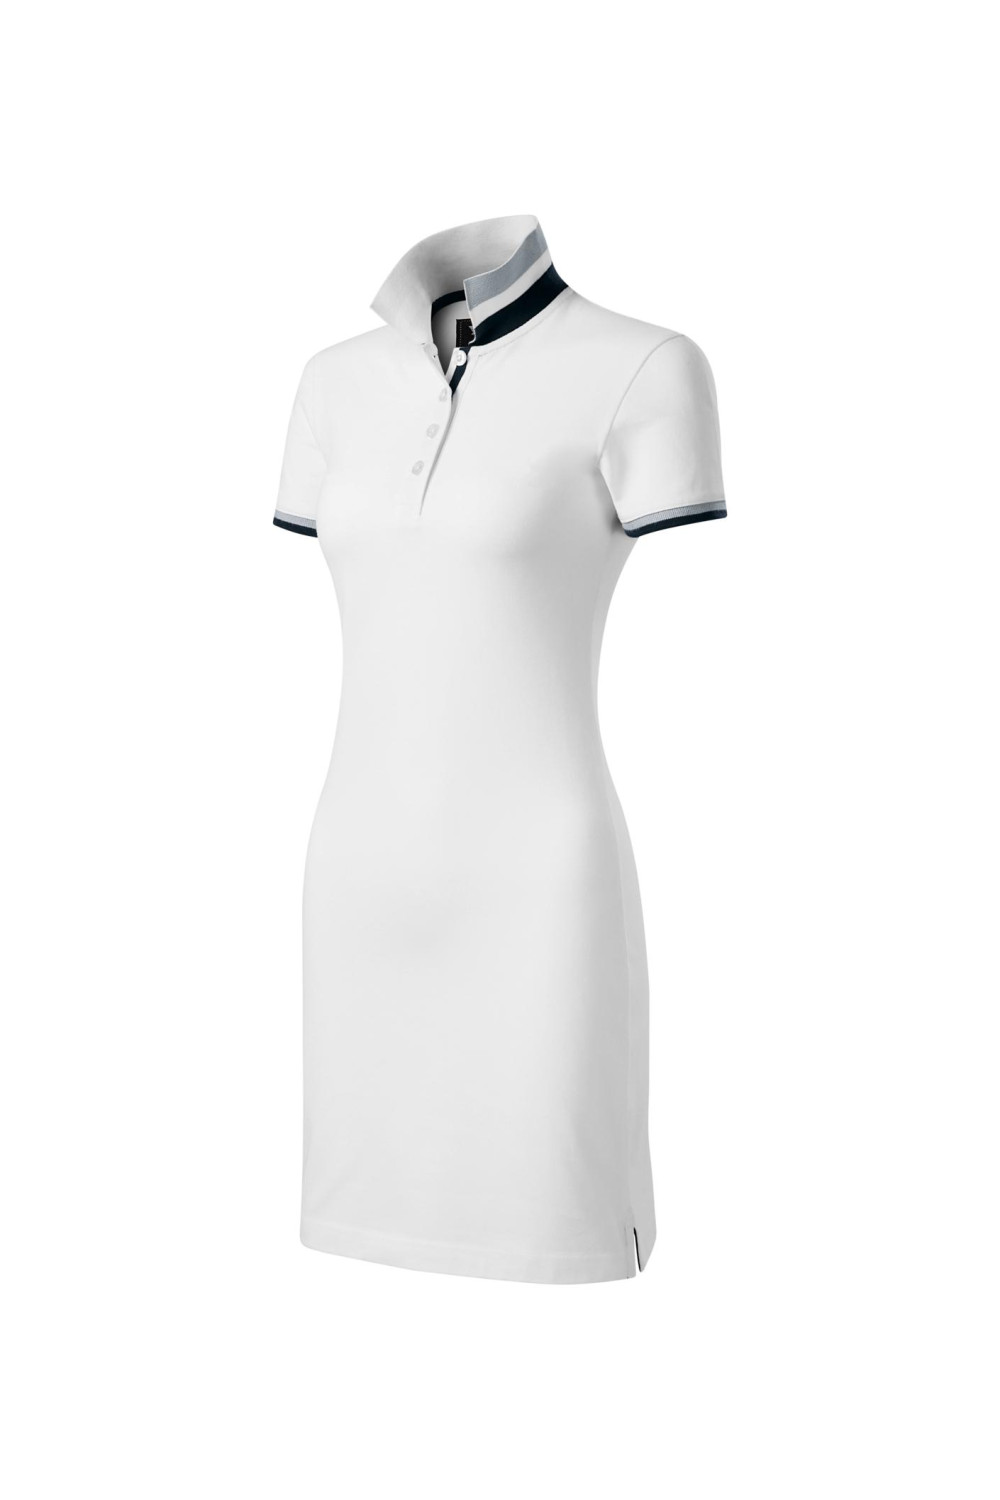 DRESS UP 271 MALFINI Sukienka damska z kołnierzykiem sportowa bawełna 100% biały